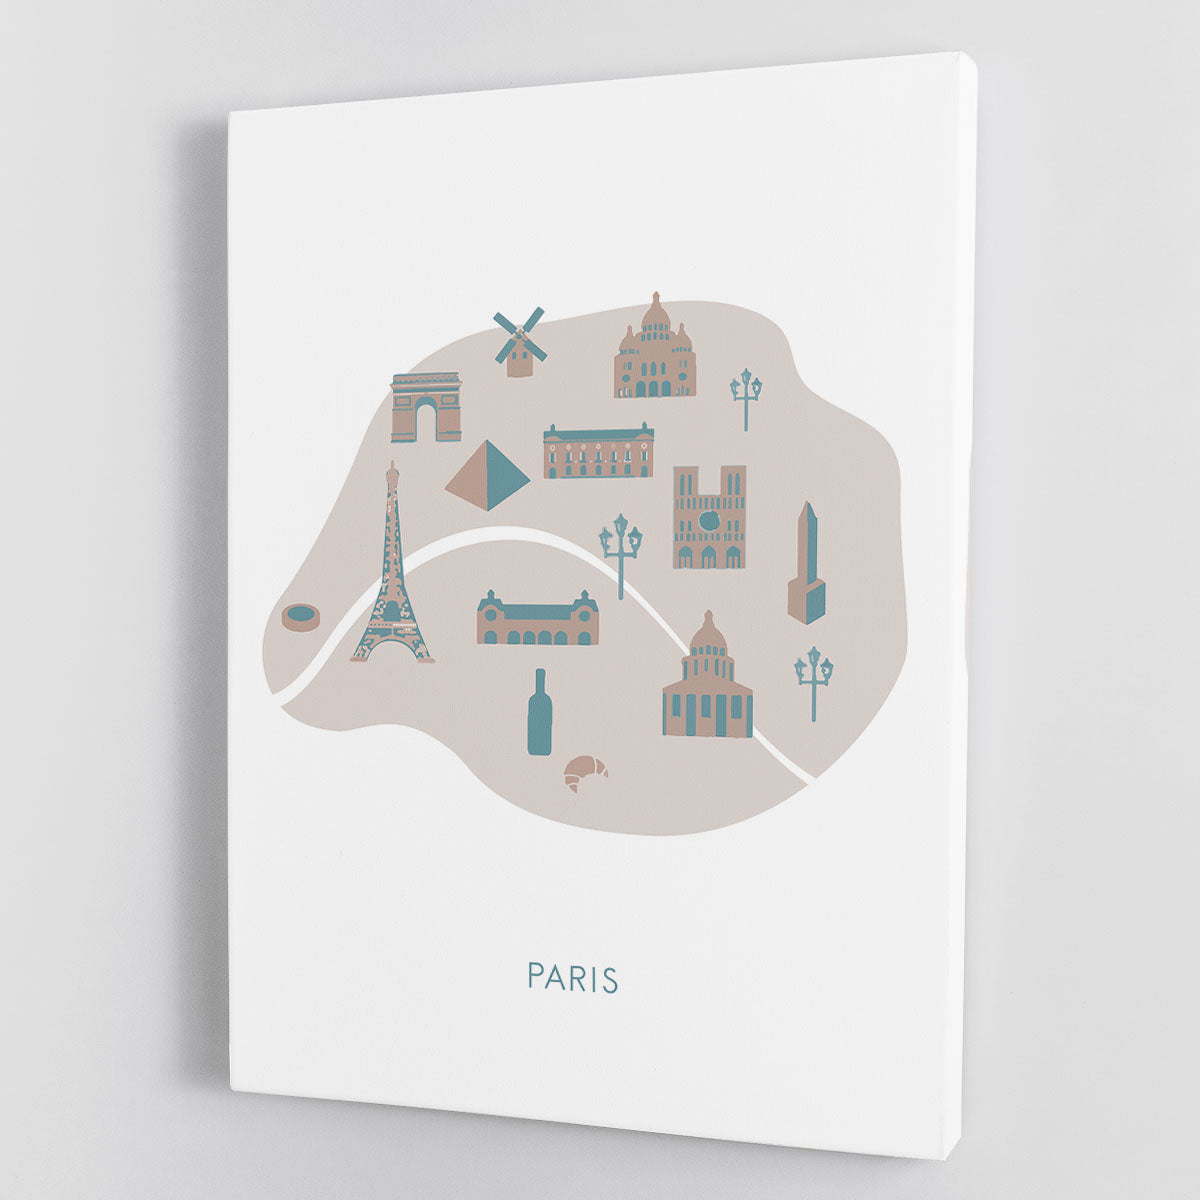 Paris Map Canvas Print or Poster - Canvas Art Rocks - 1